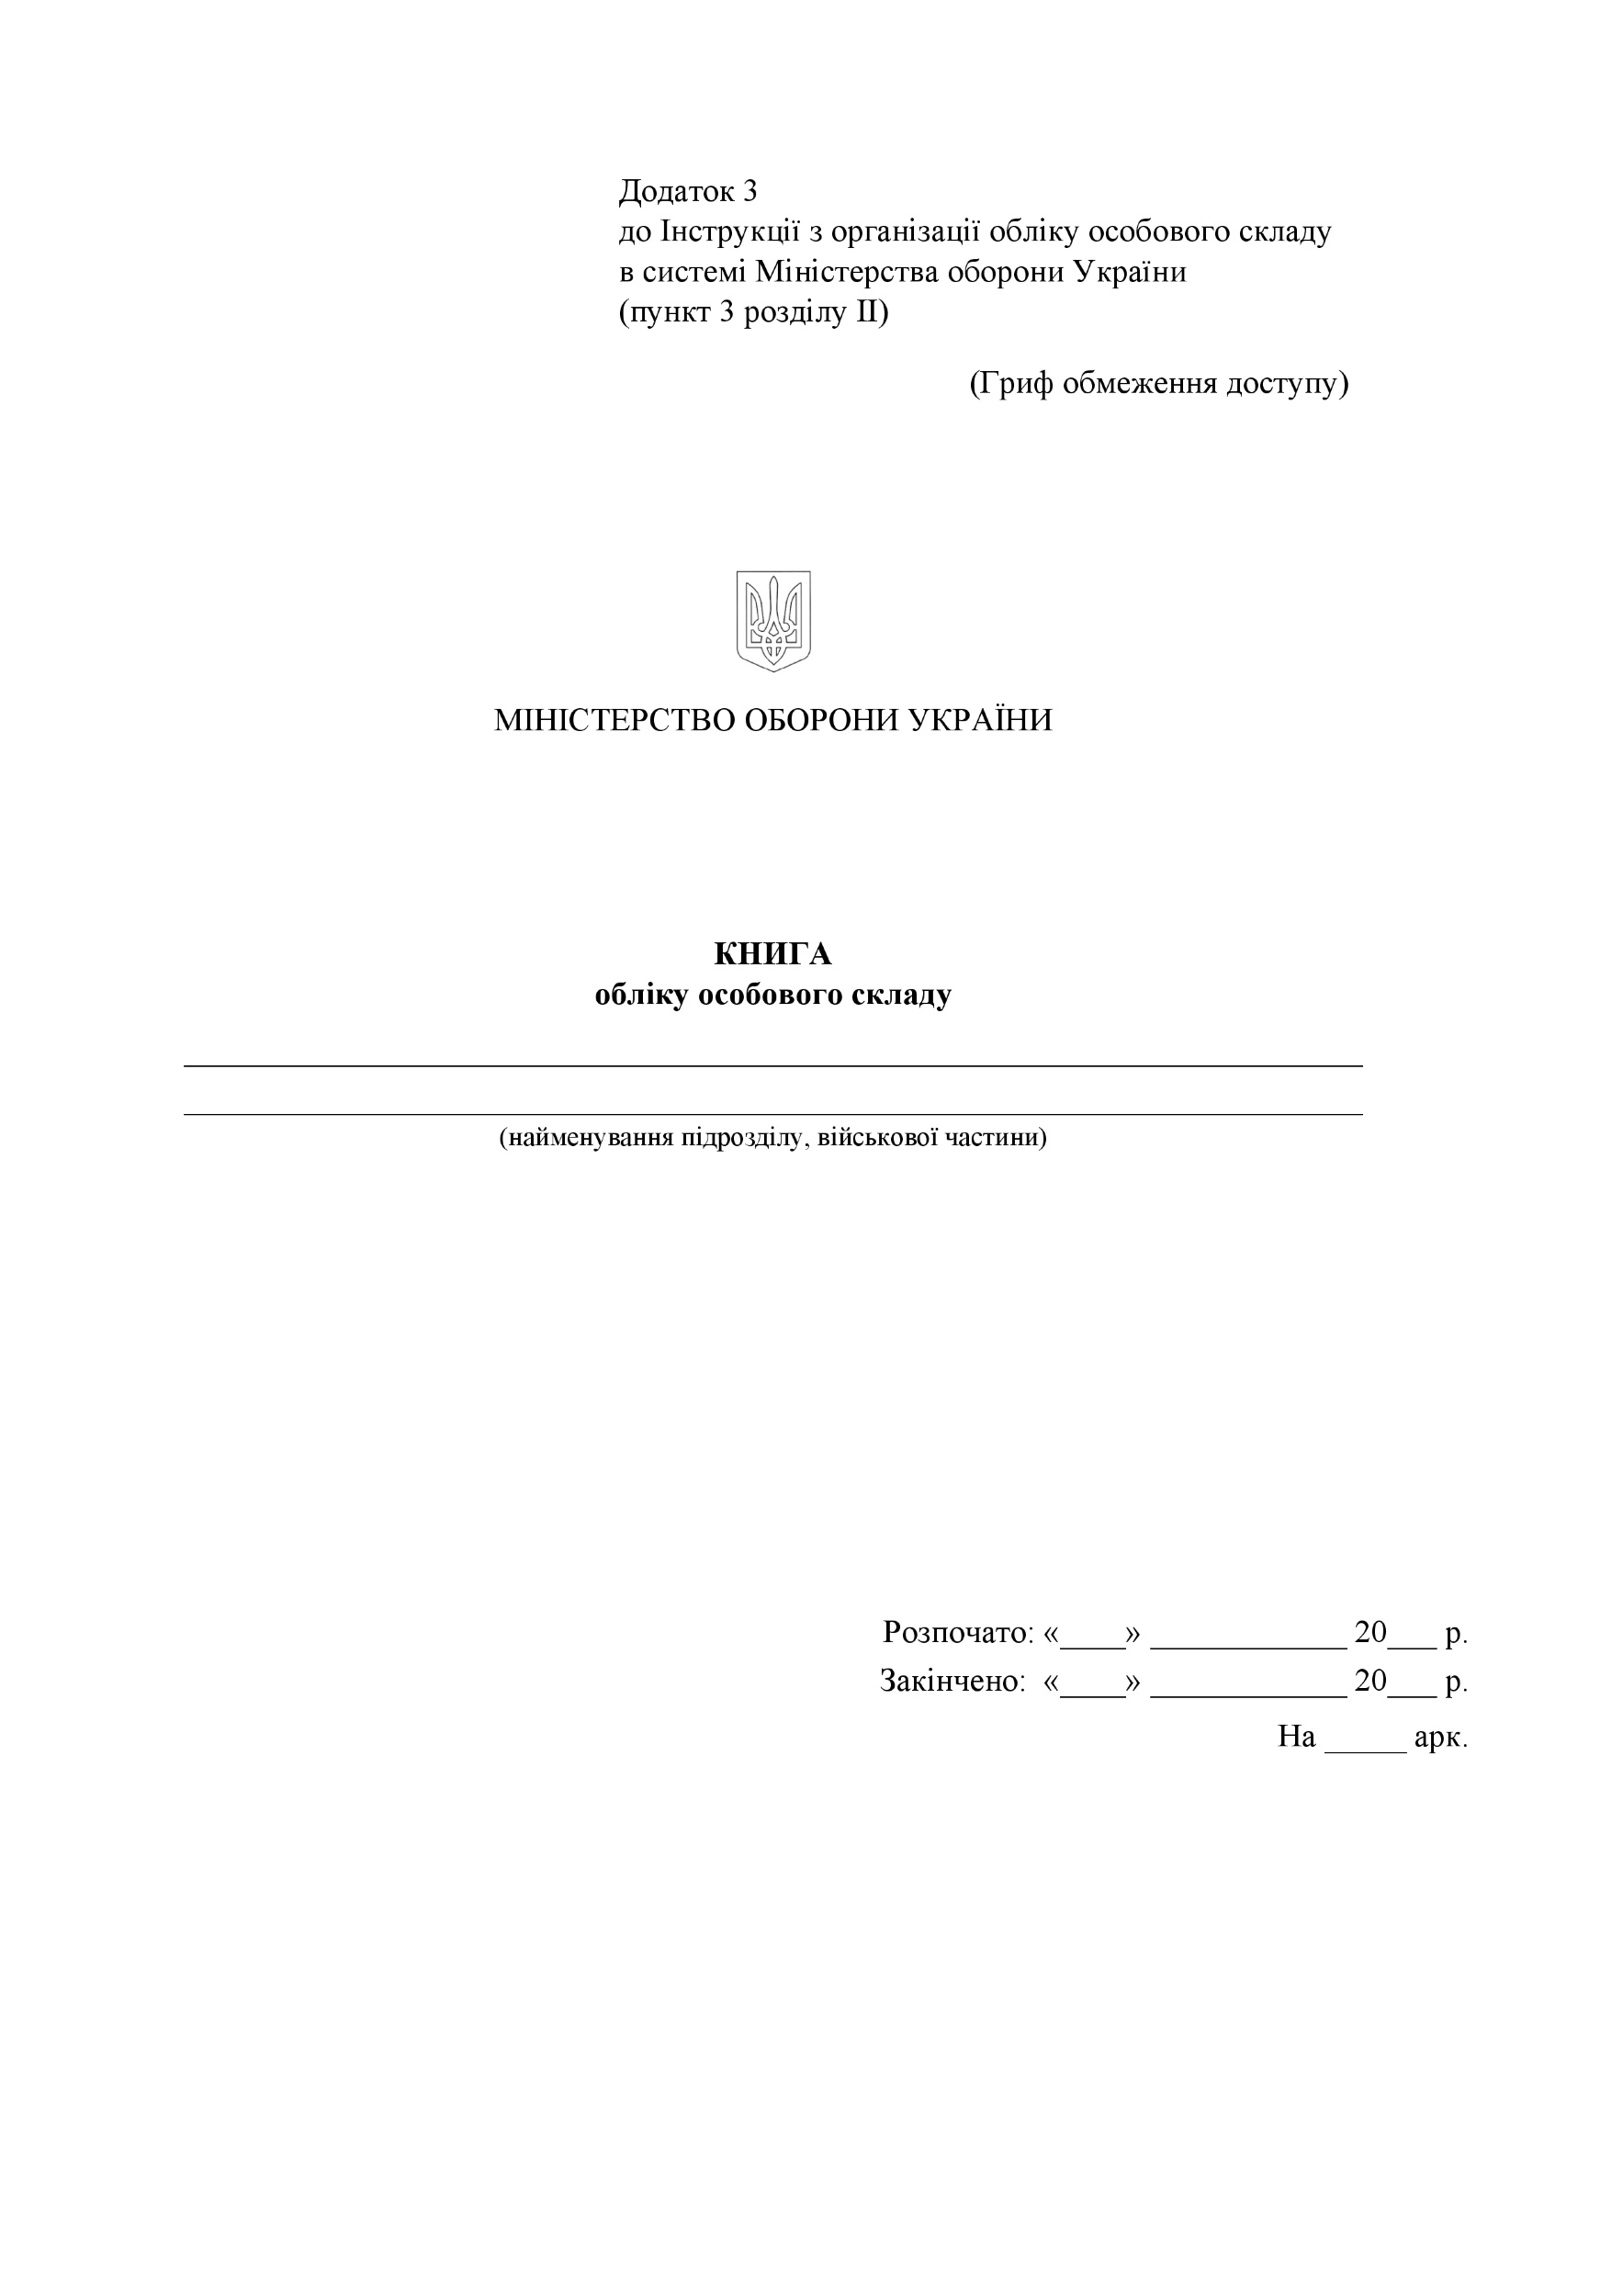 Книга обліку особового складу, додаток 3. Автор — Міністерство оборони України. 